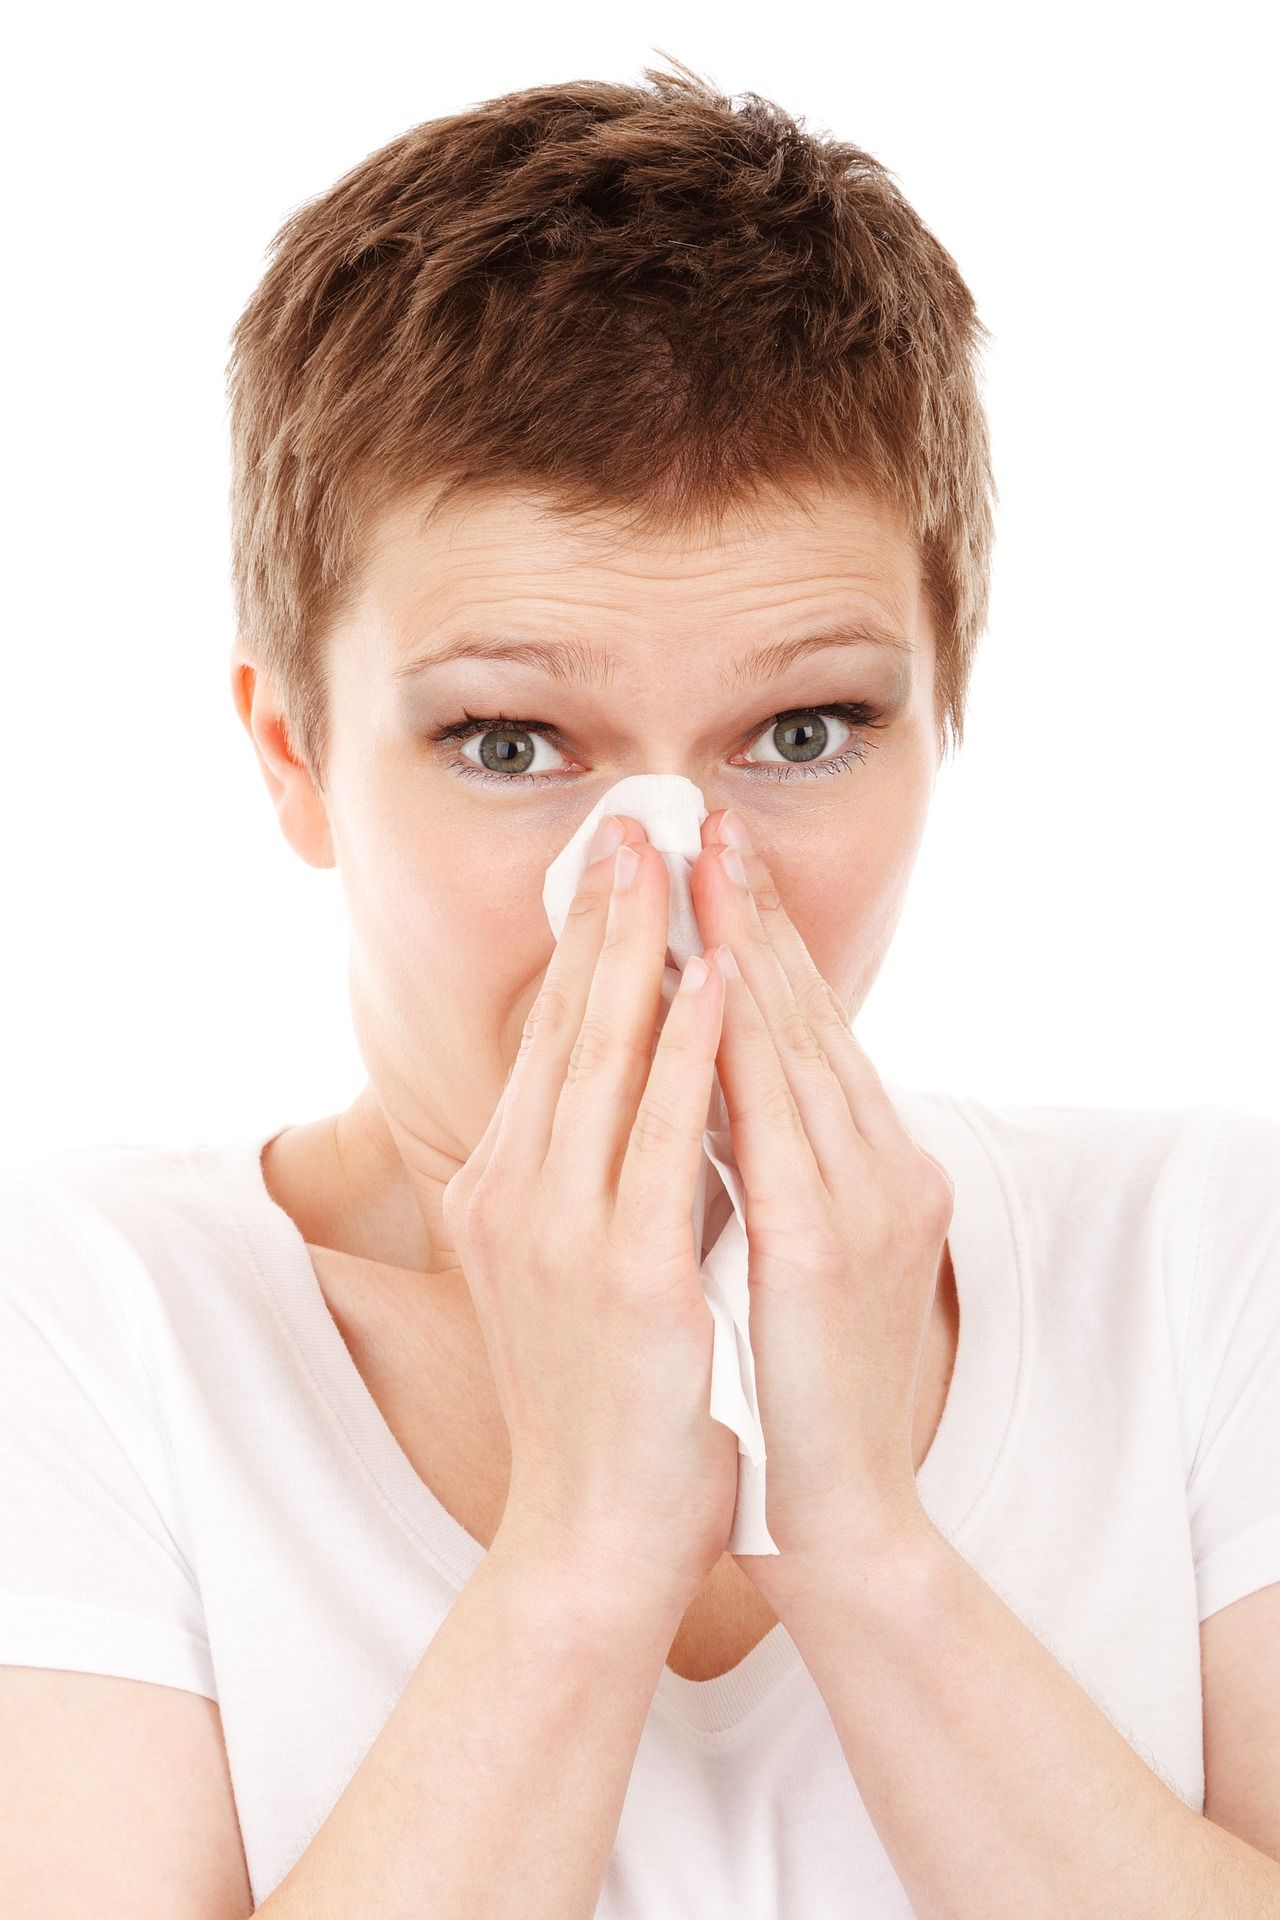 Trápia vás alergie? 5 tipov ako sa bojovať proti prachu